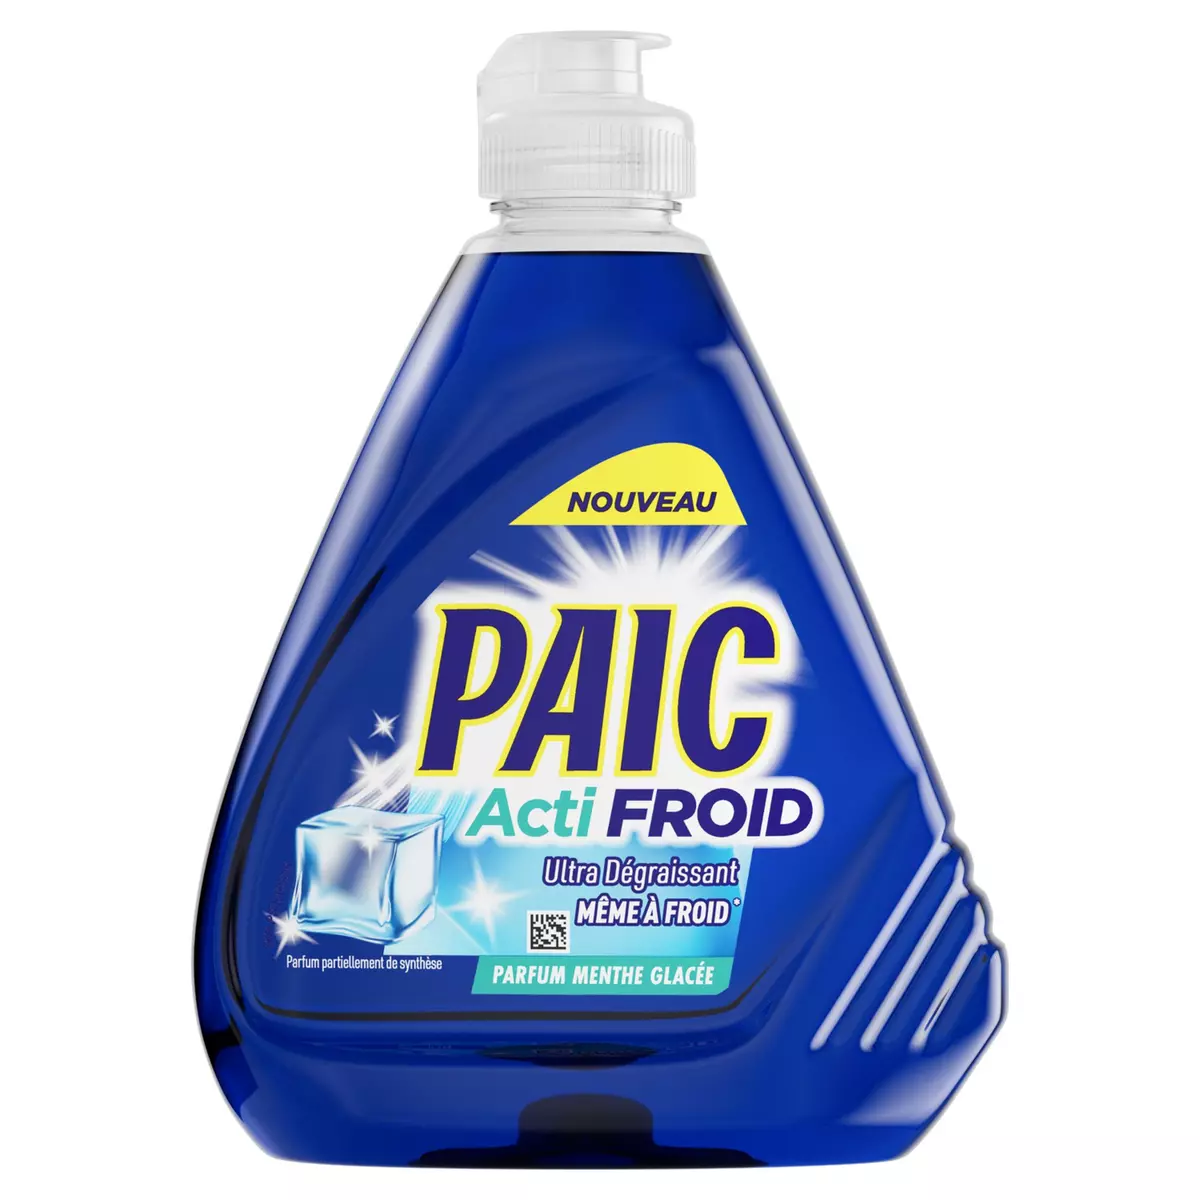 PAIC Acti Froid liquide vaisselle ultra dégraissant parfum menthe glacée 500ml